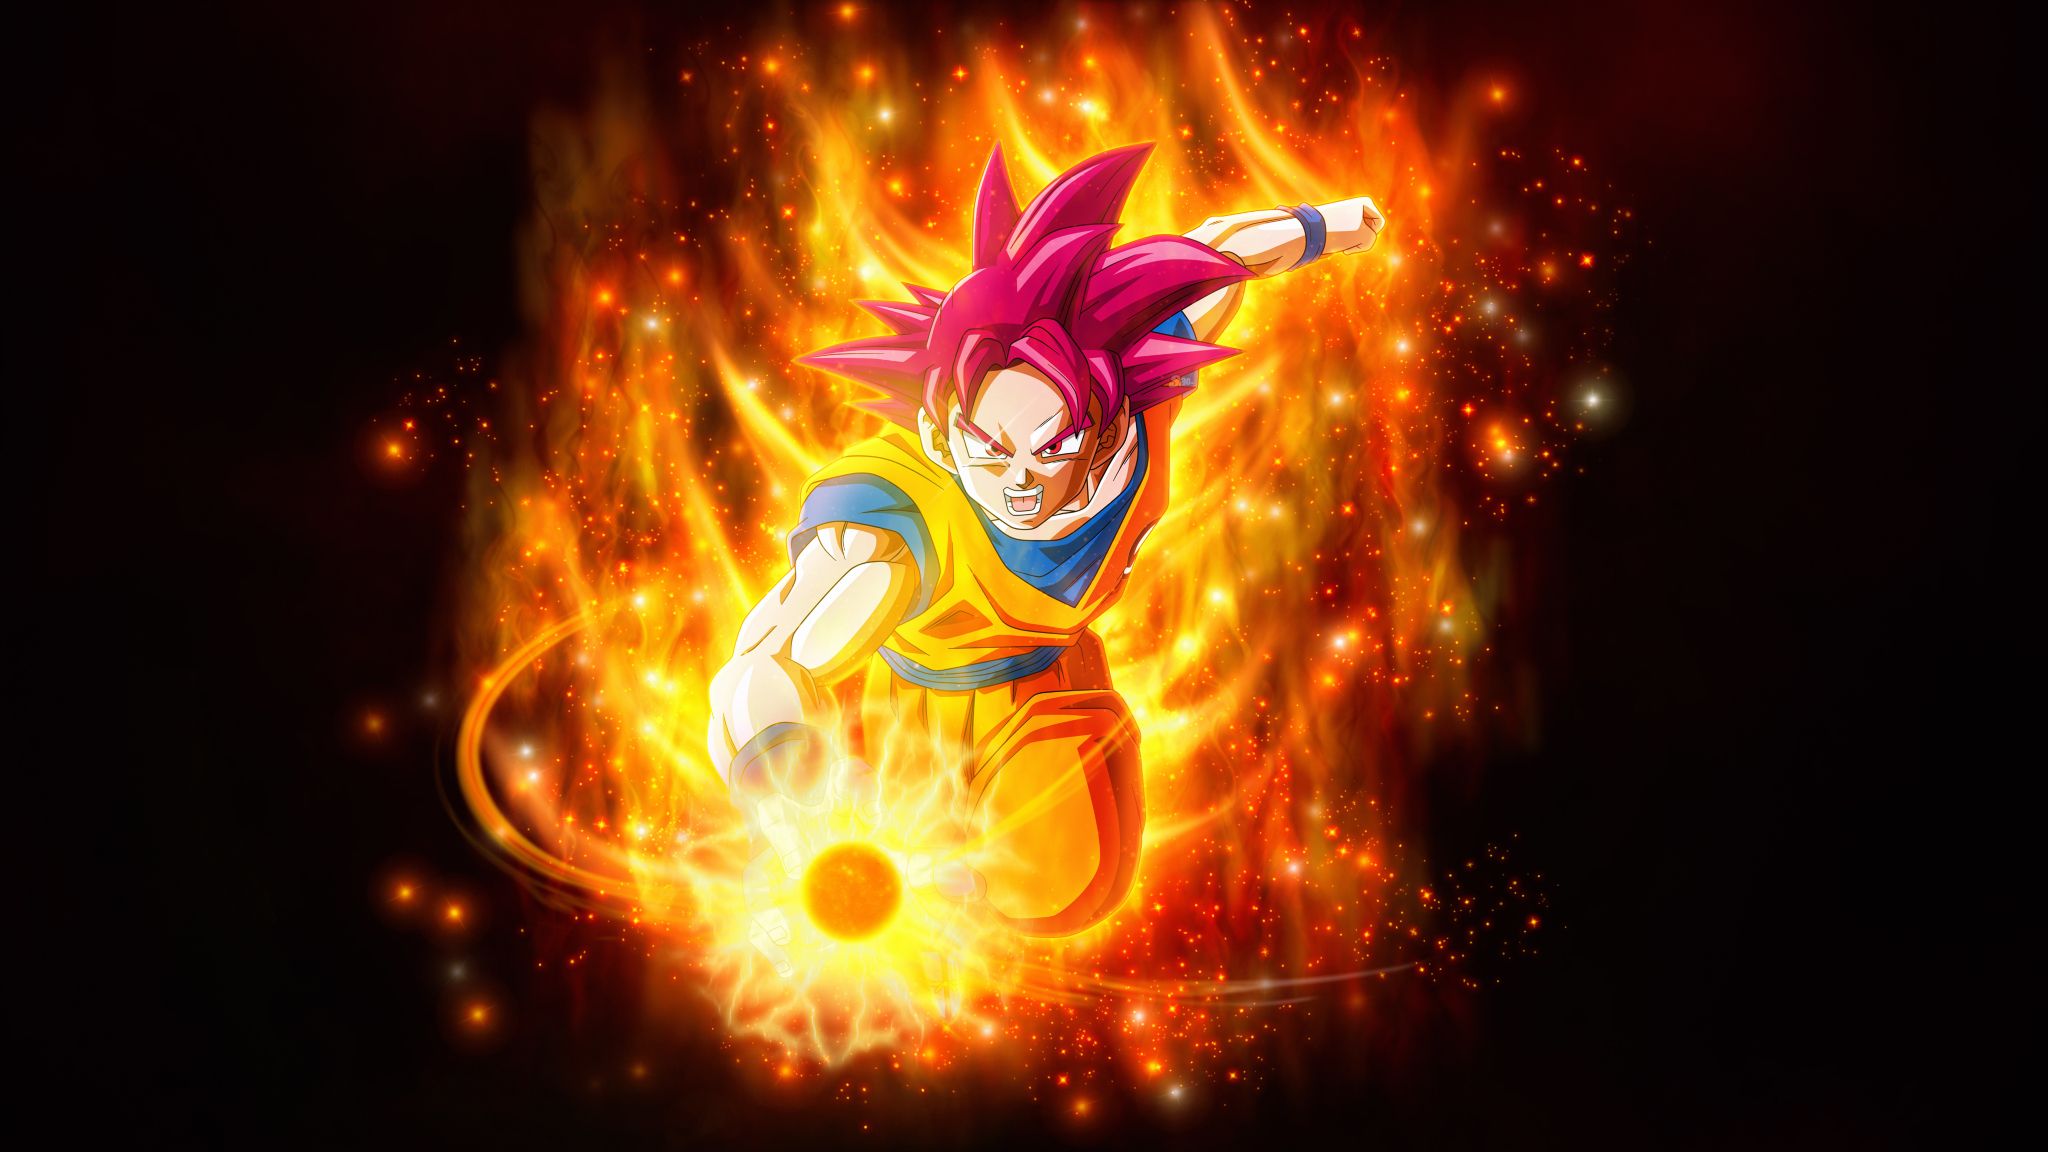 Super Saiyan God Goku Dragon Ball 2048x1152 Resolution Wallpaper, HD Anime 4K Wallpaper, Image, Photo and Background